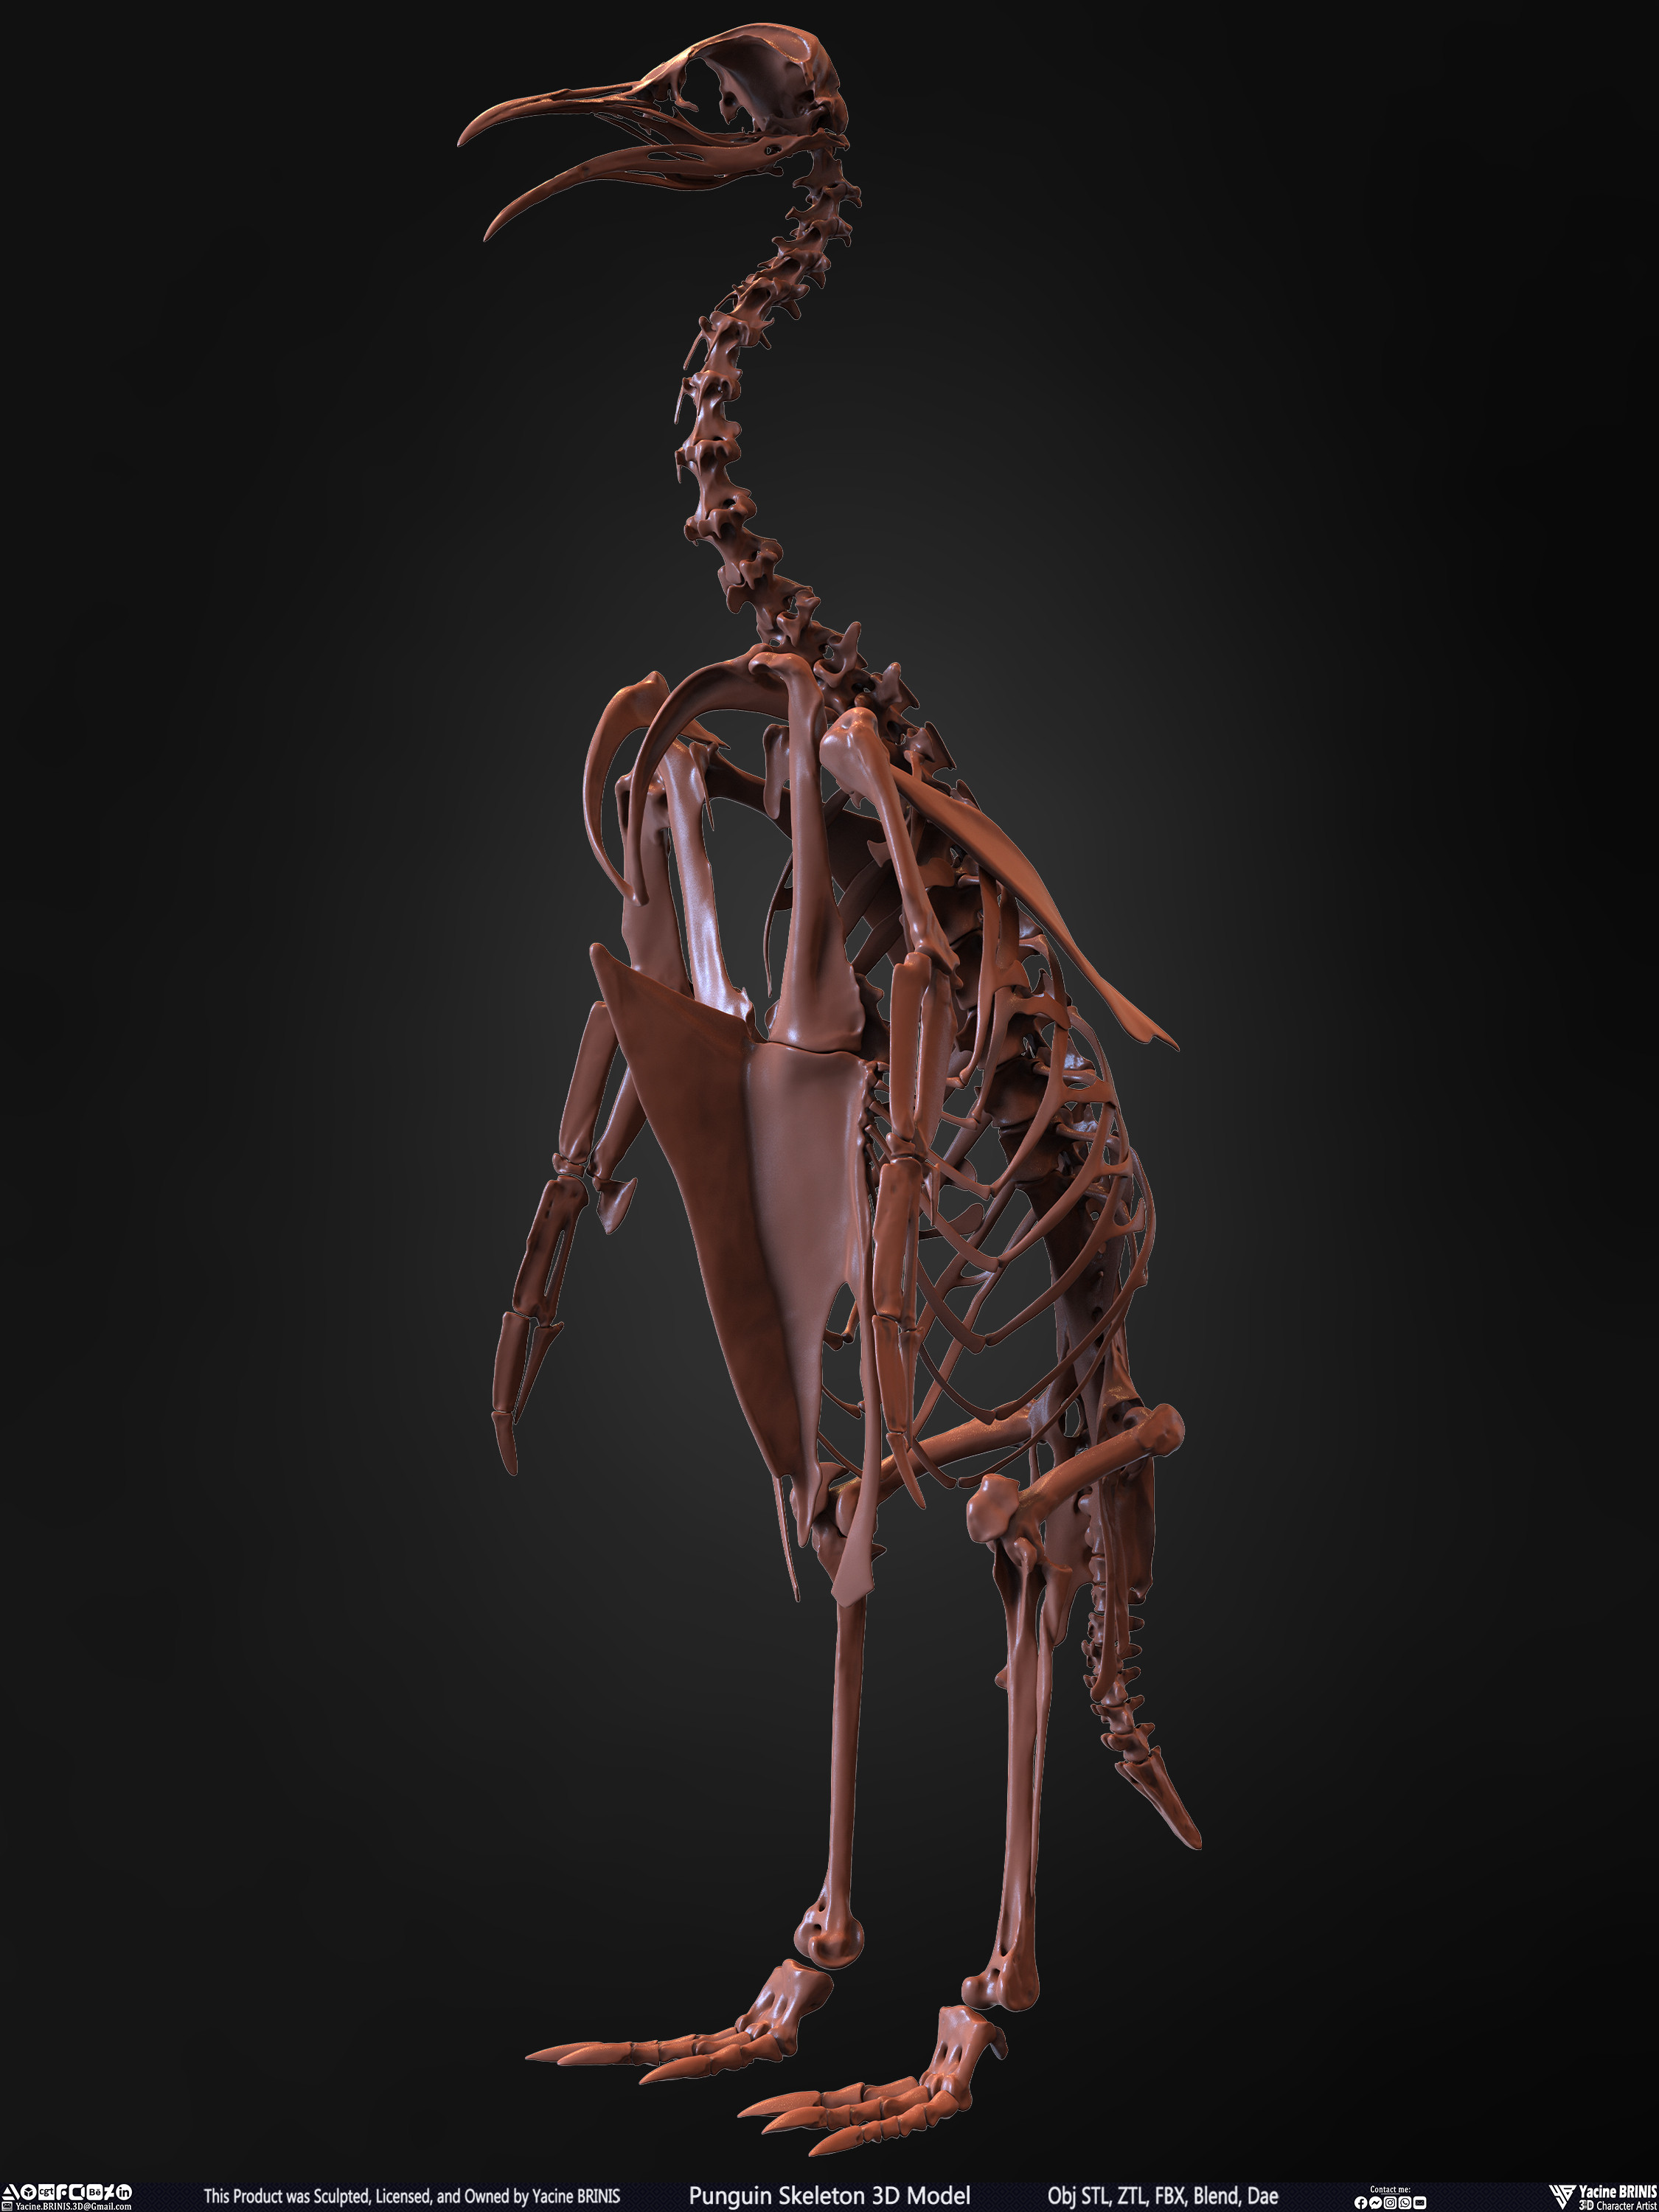 Penguin Skeleton 3D Model Sculpted by Yacine BRINIS Set 009